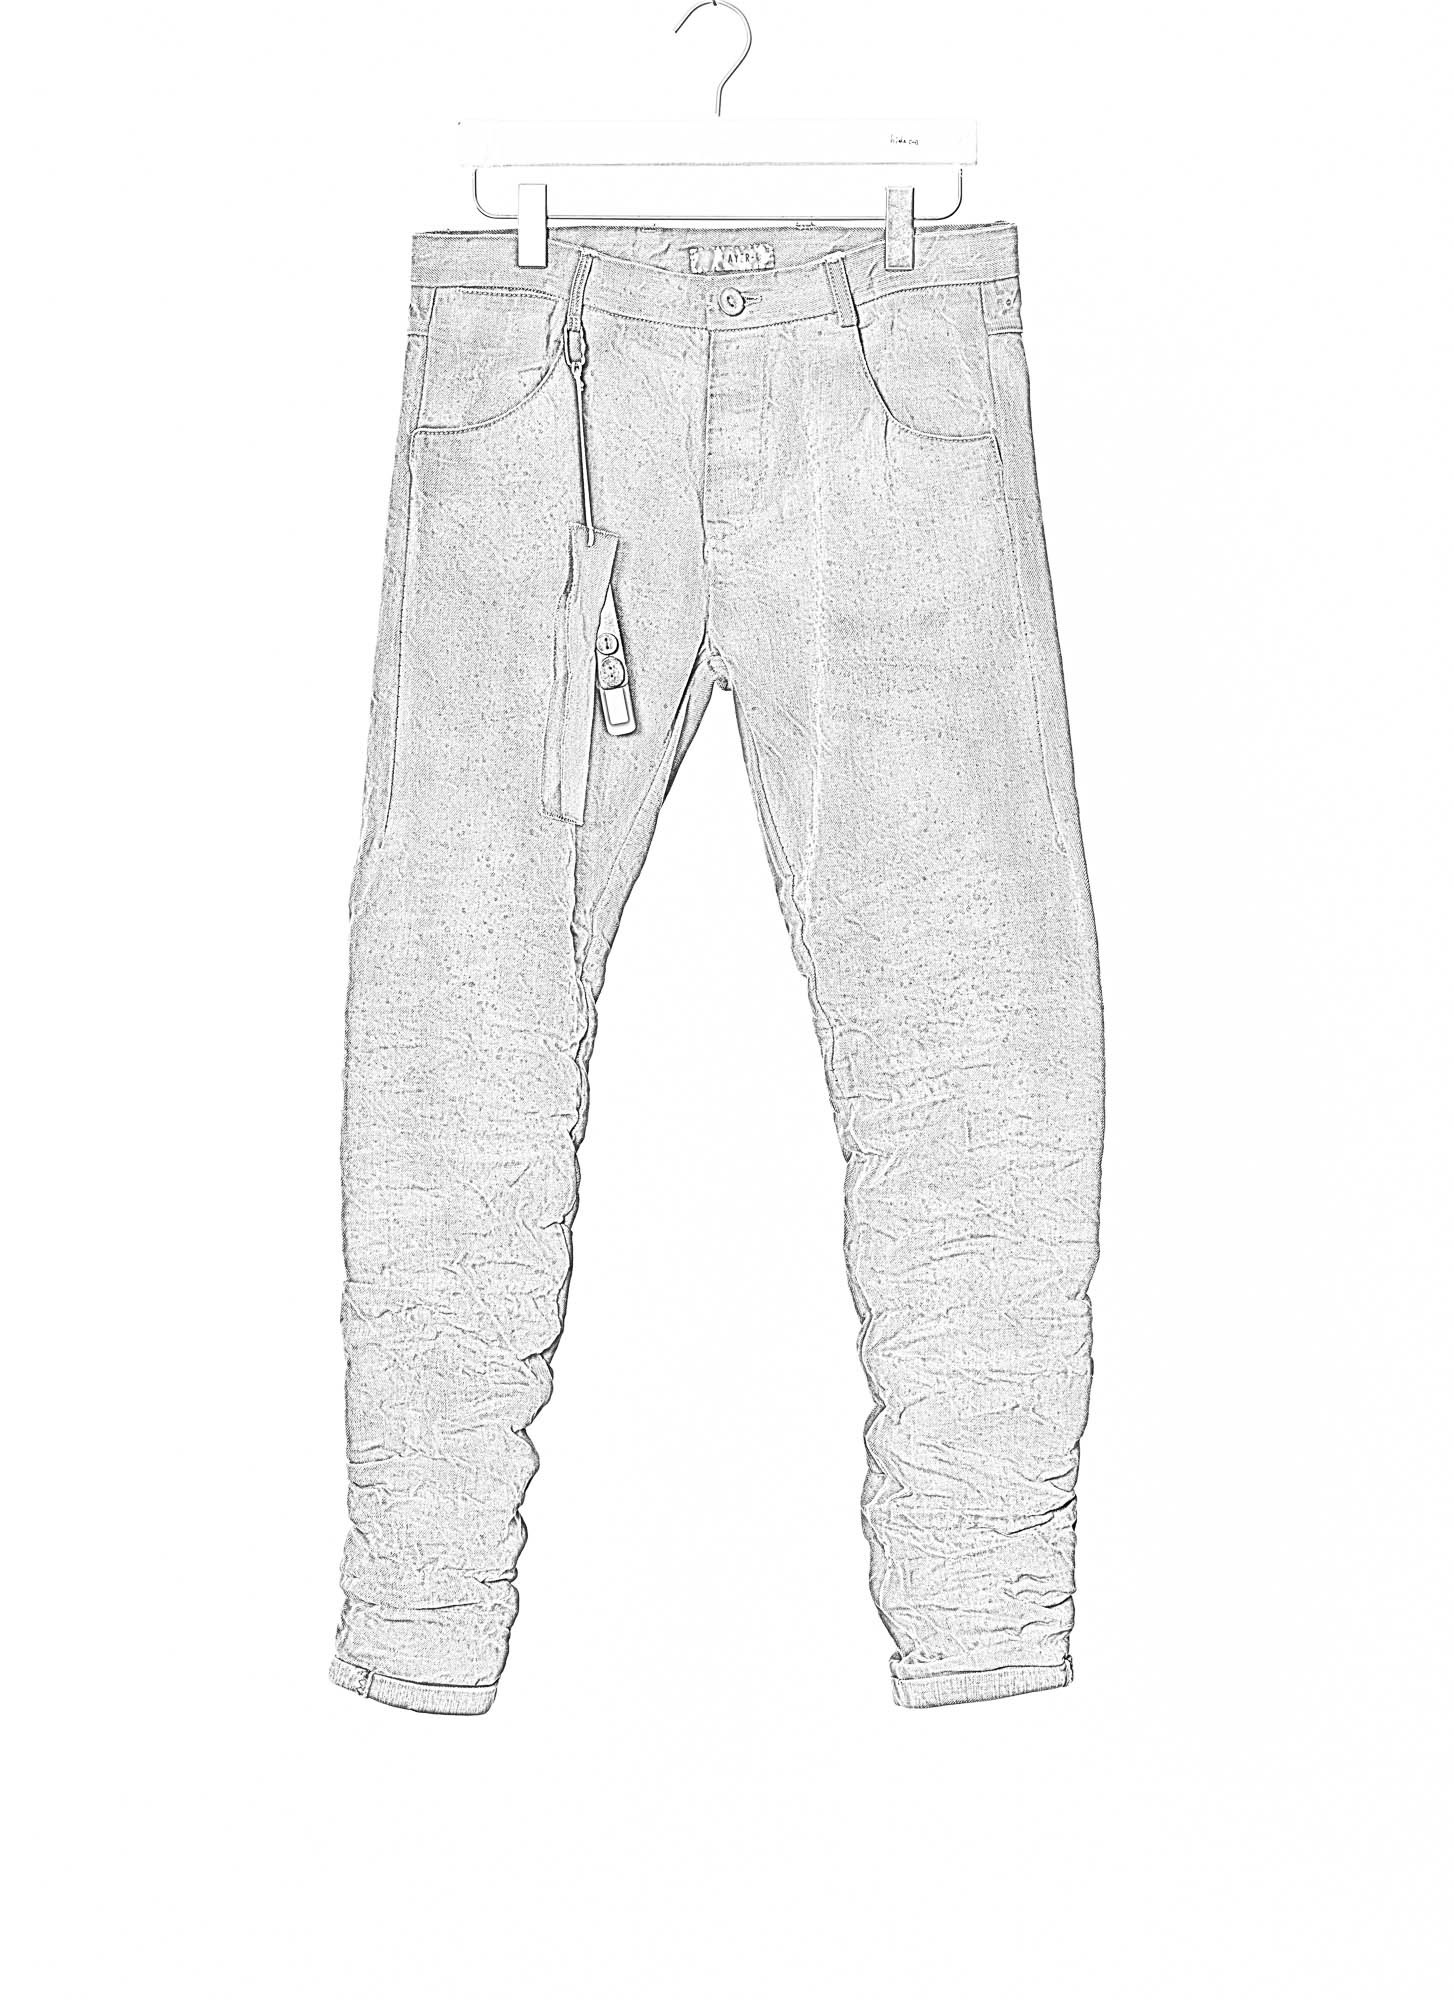 LAYER 0 Men 5 Pocket Pants 110 Herren Hose Jeans cotton grey grey aged denim hide m 2